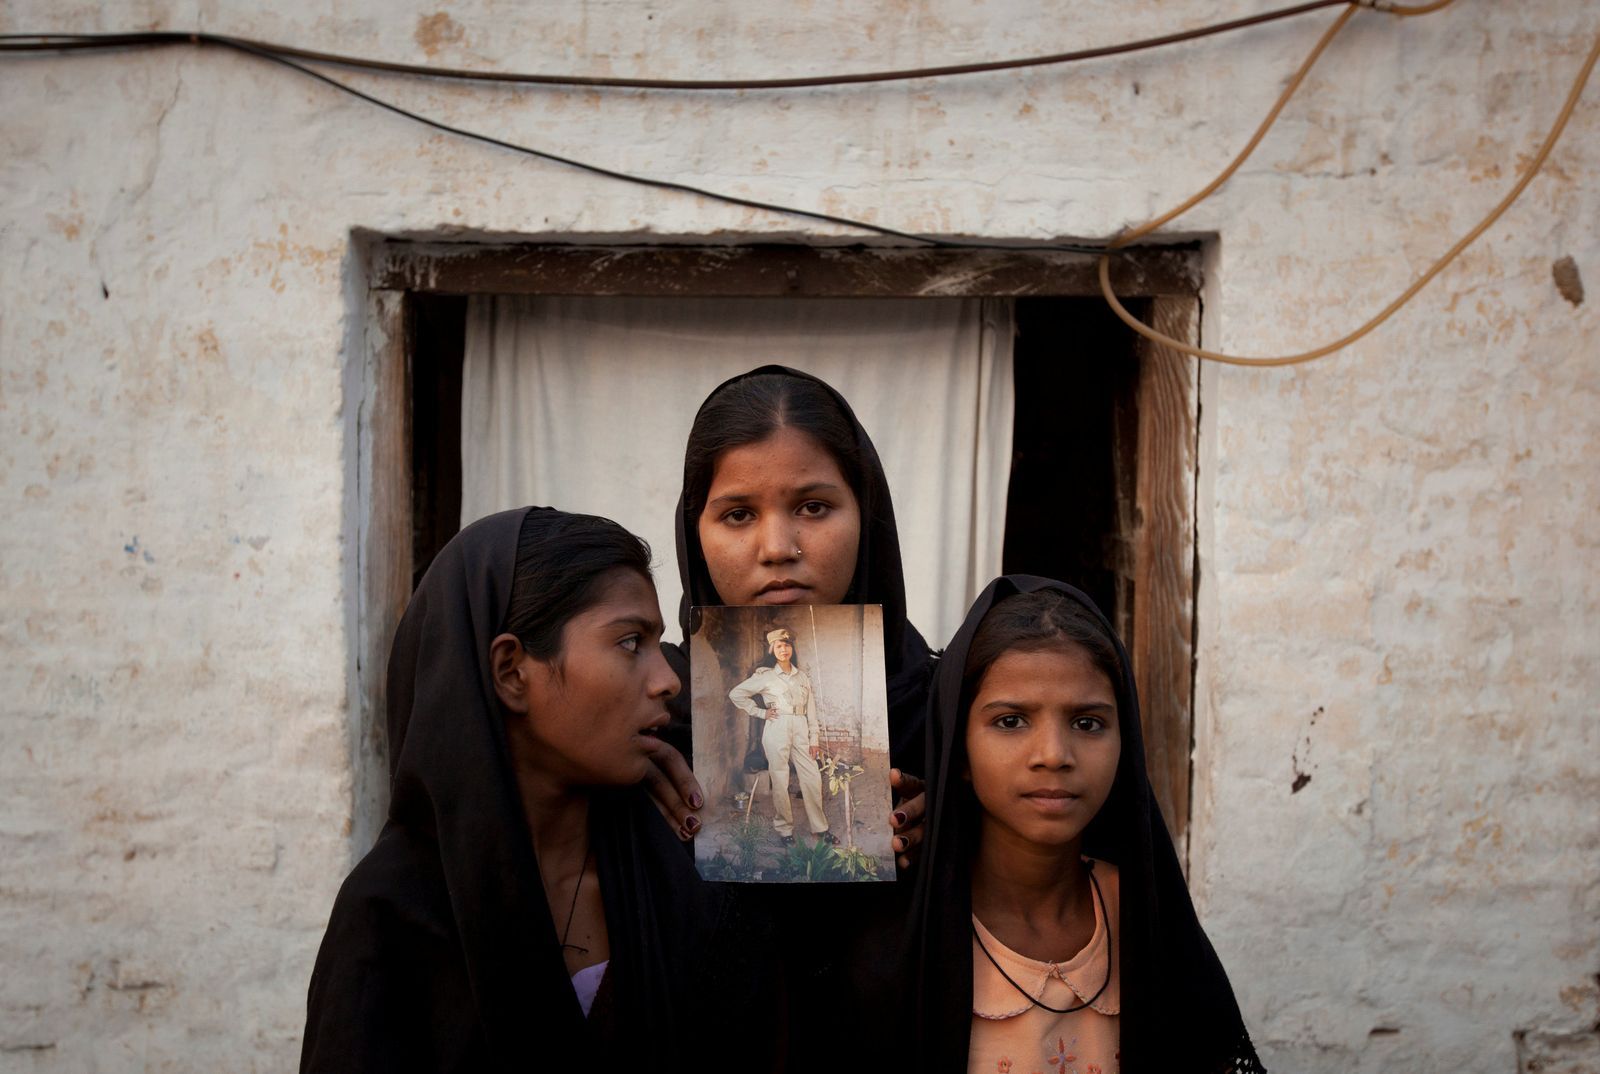 pákistánská křesťanská Bibíová její dcery 2010